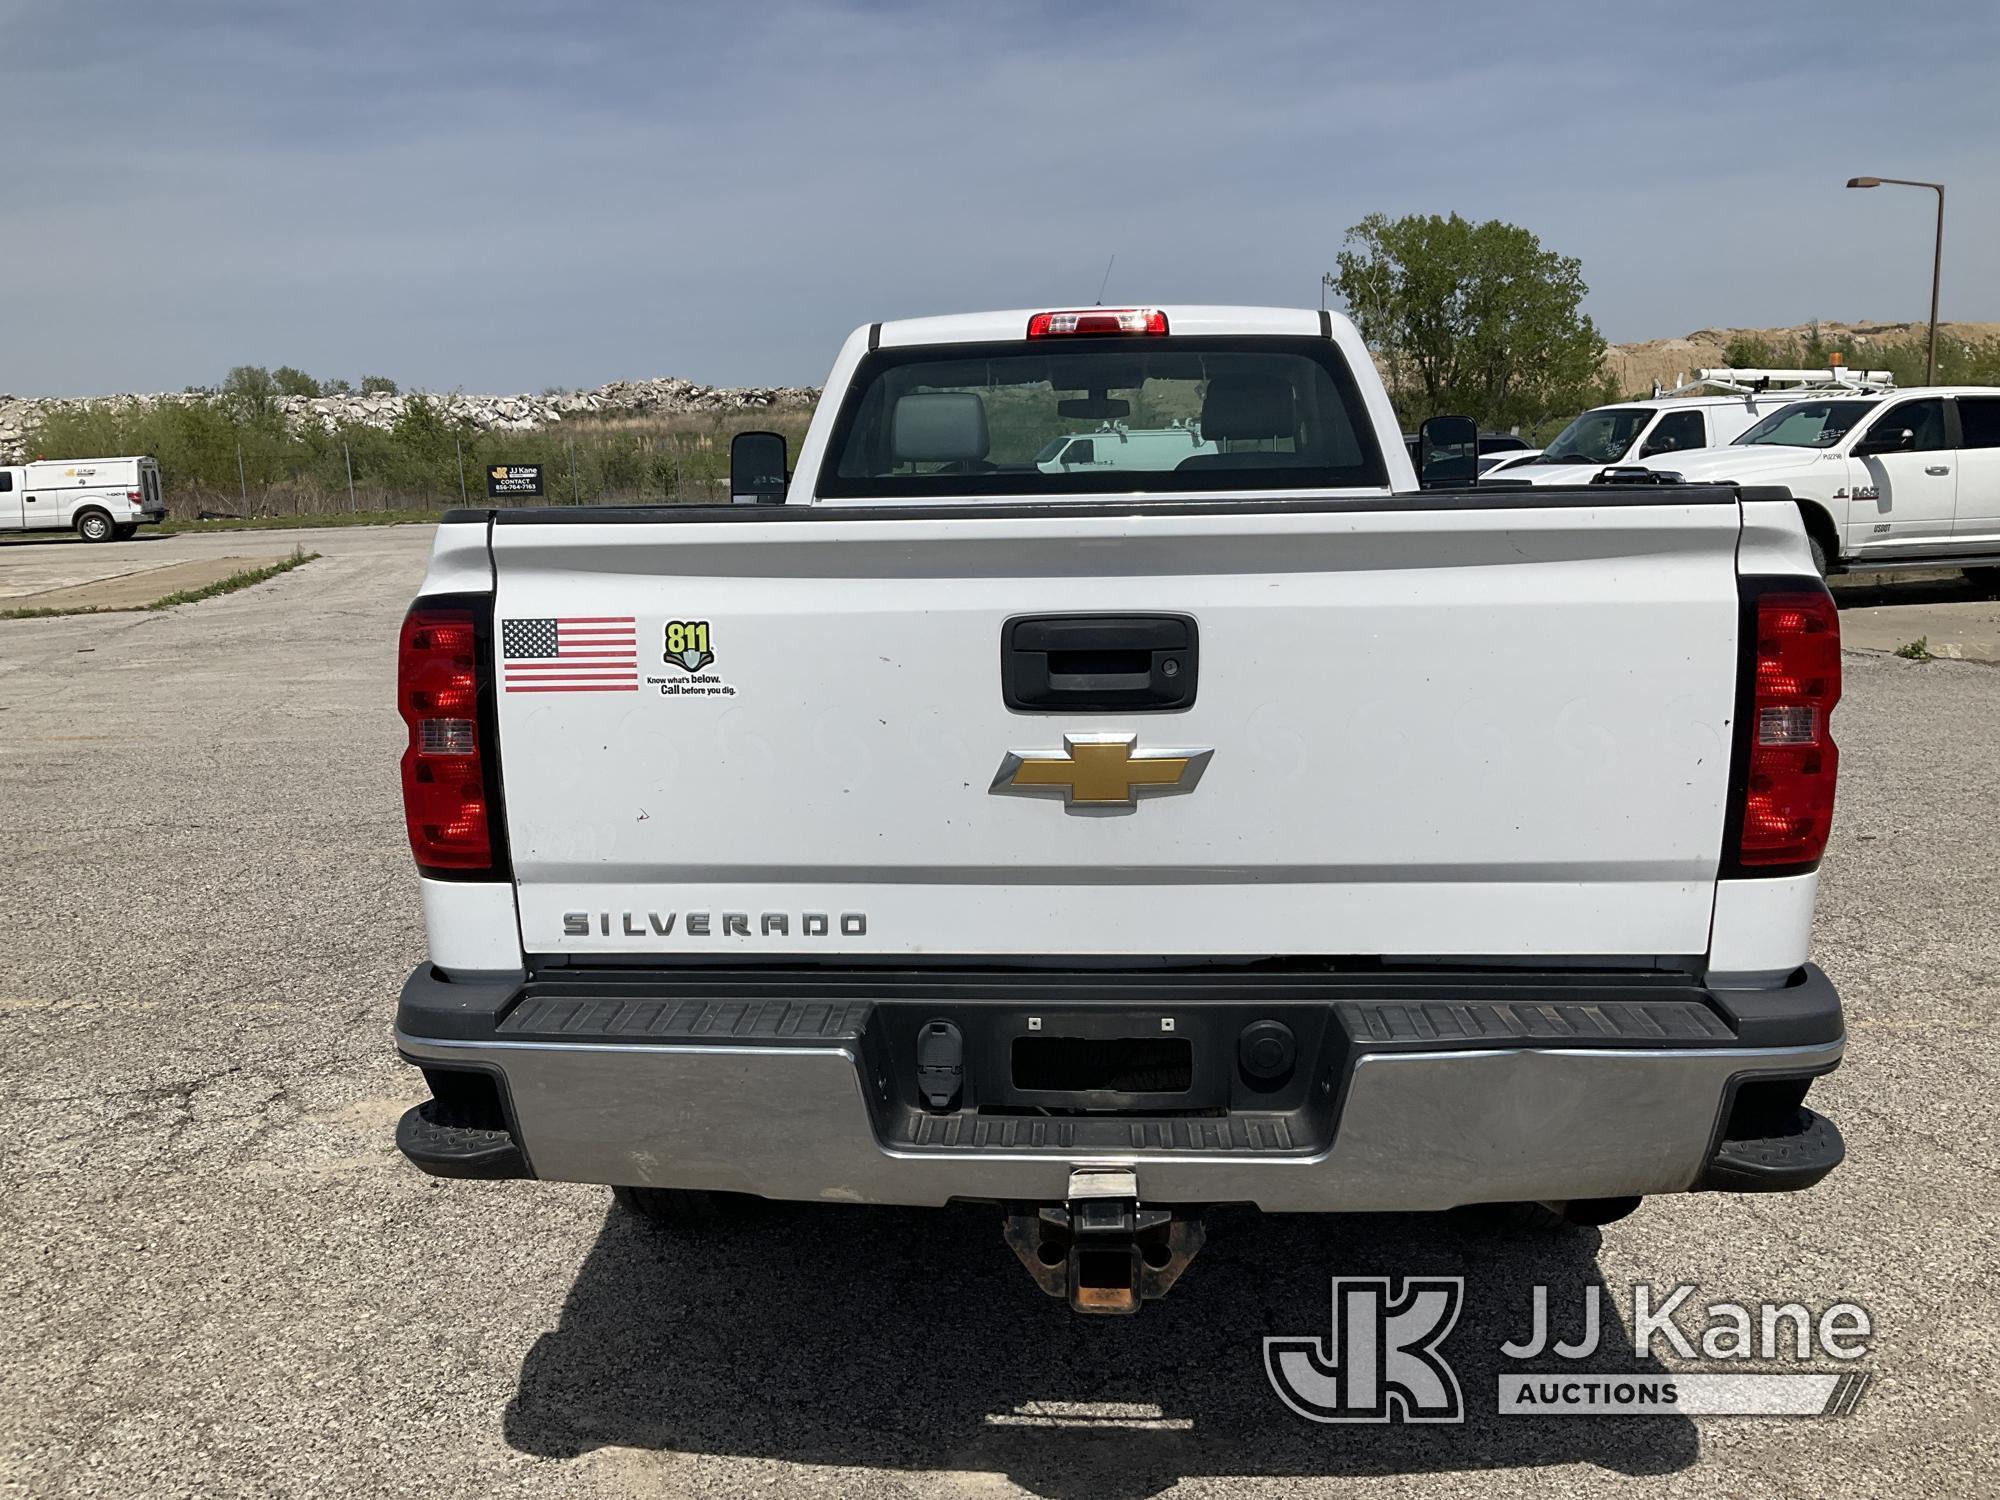 (Kansas City, MO) 2015 Chevrolet Silverado 2500HD Pickup Truck Runs & Moves) (Dents On Cab & Bed